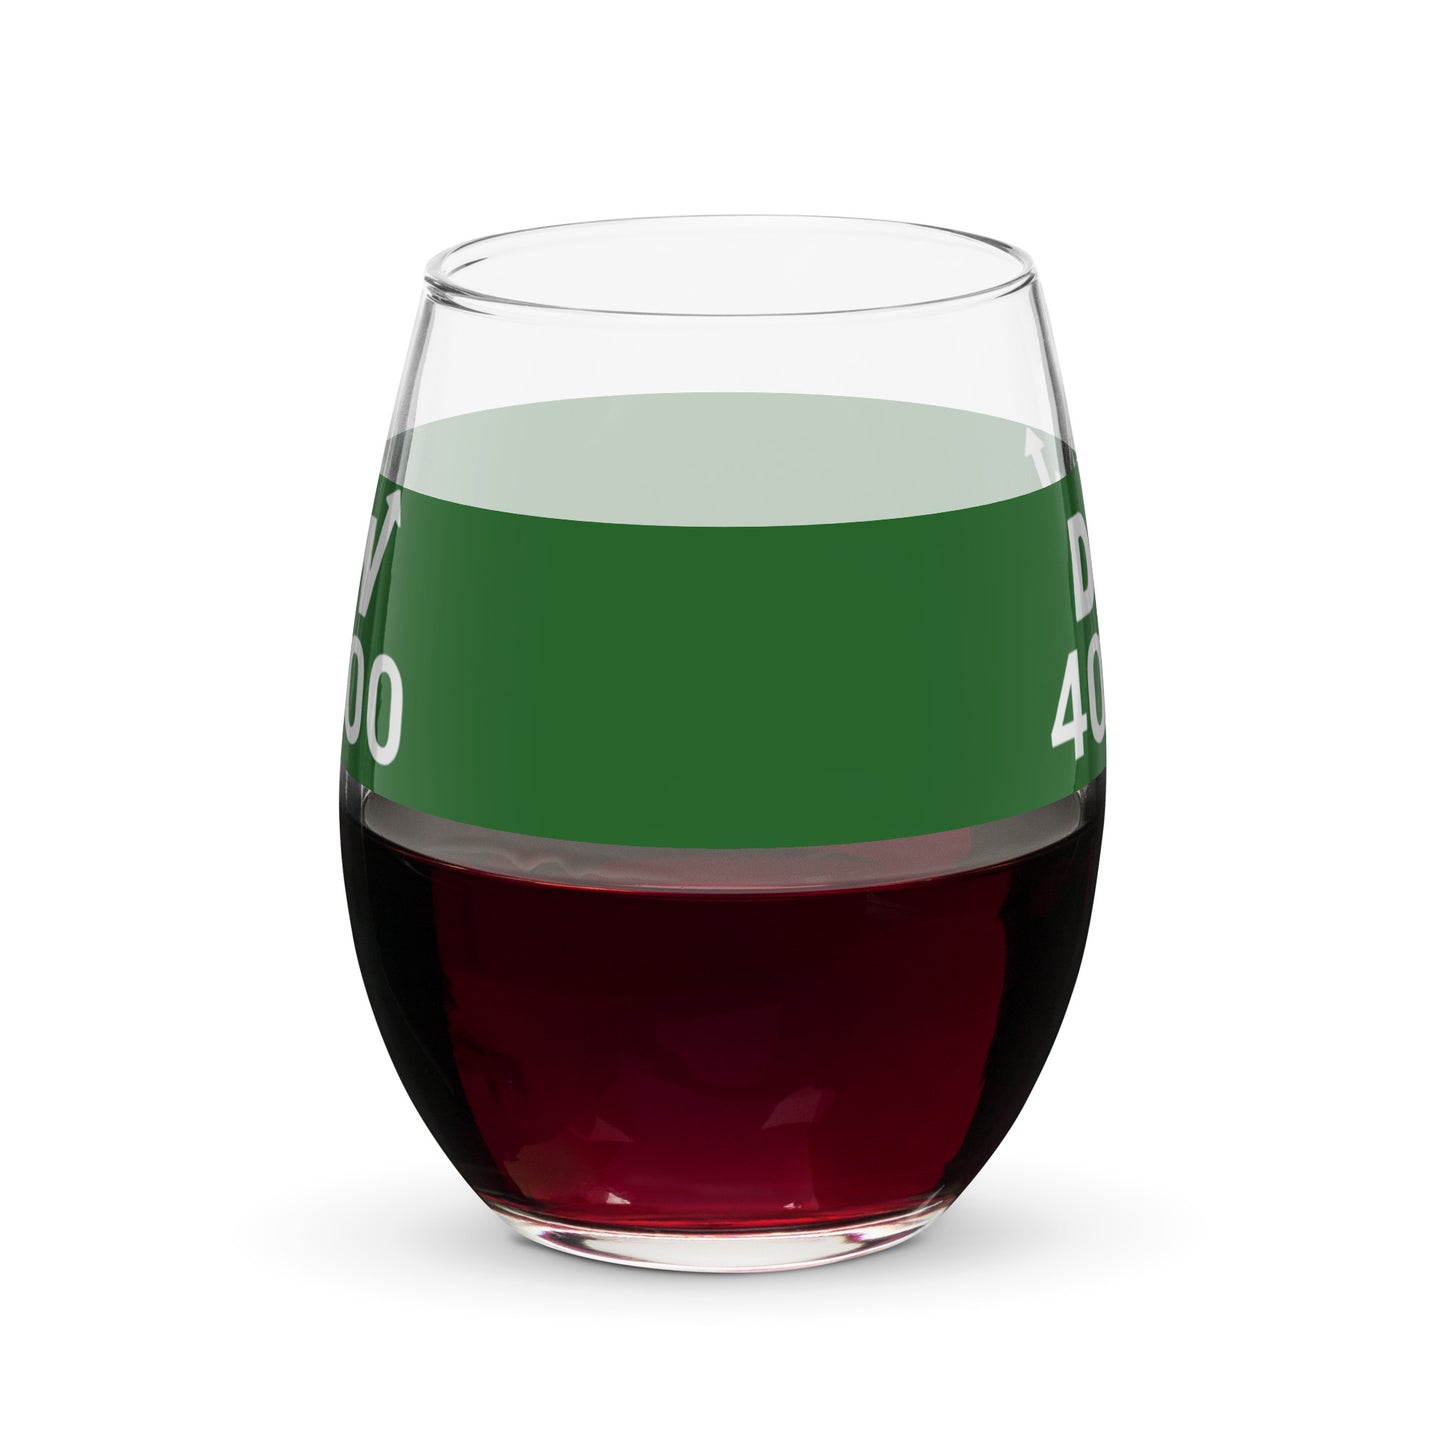 Dow 40.000 Stemless wine glass / Dow 40k Stemless wine glass